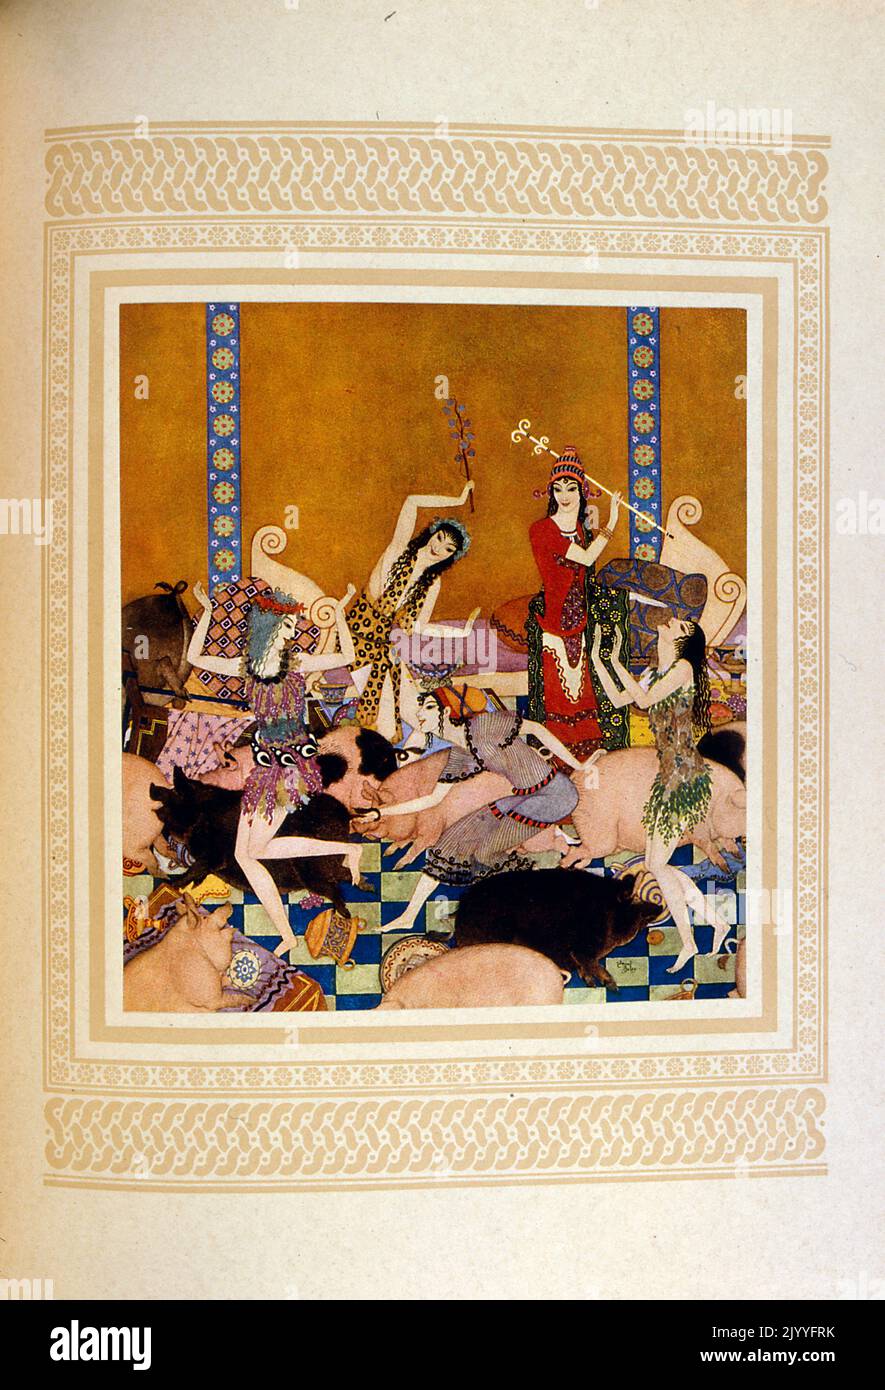 Farbige Illustration von Frauen, die mit Schweinen tanzen in der Folge, als Odysseus mit Circe auf der Insel gefangen ist. Illustriert von Edmund Dulac (1882-1953), einem französisch-britischen eingebürgerten Magazin und Buchillustrator. Stockfoto